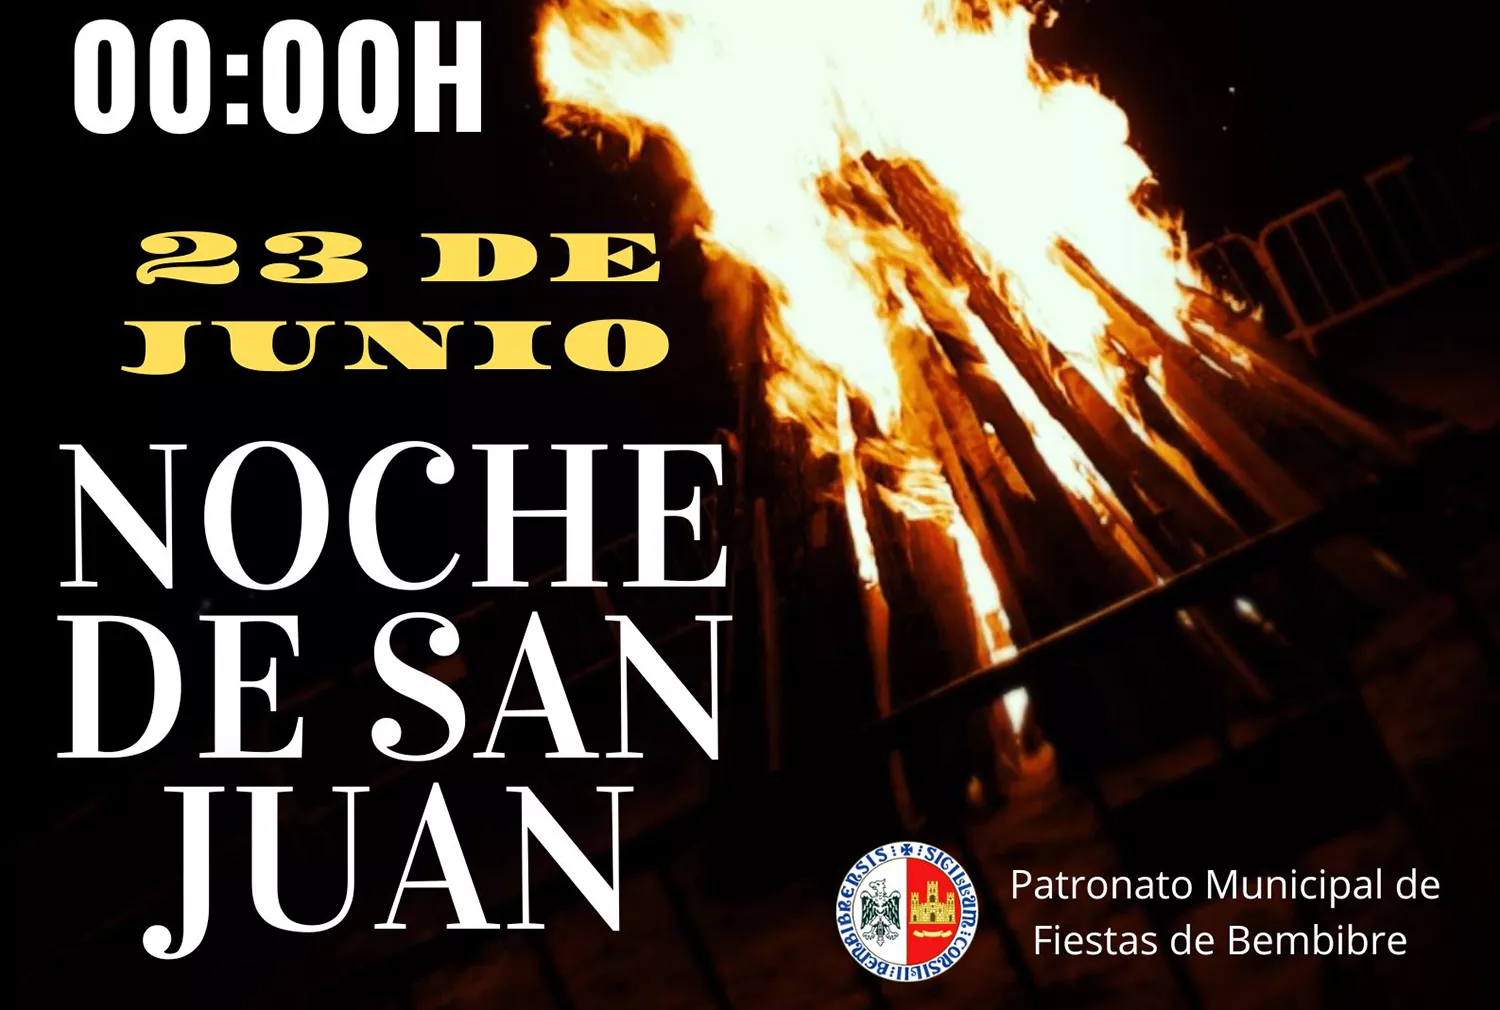 Bembibre celebra la noche de San Juan con bollo preñado, música y su tradicional hoguera